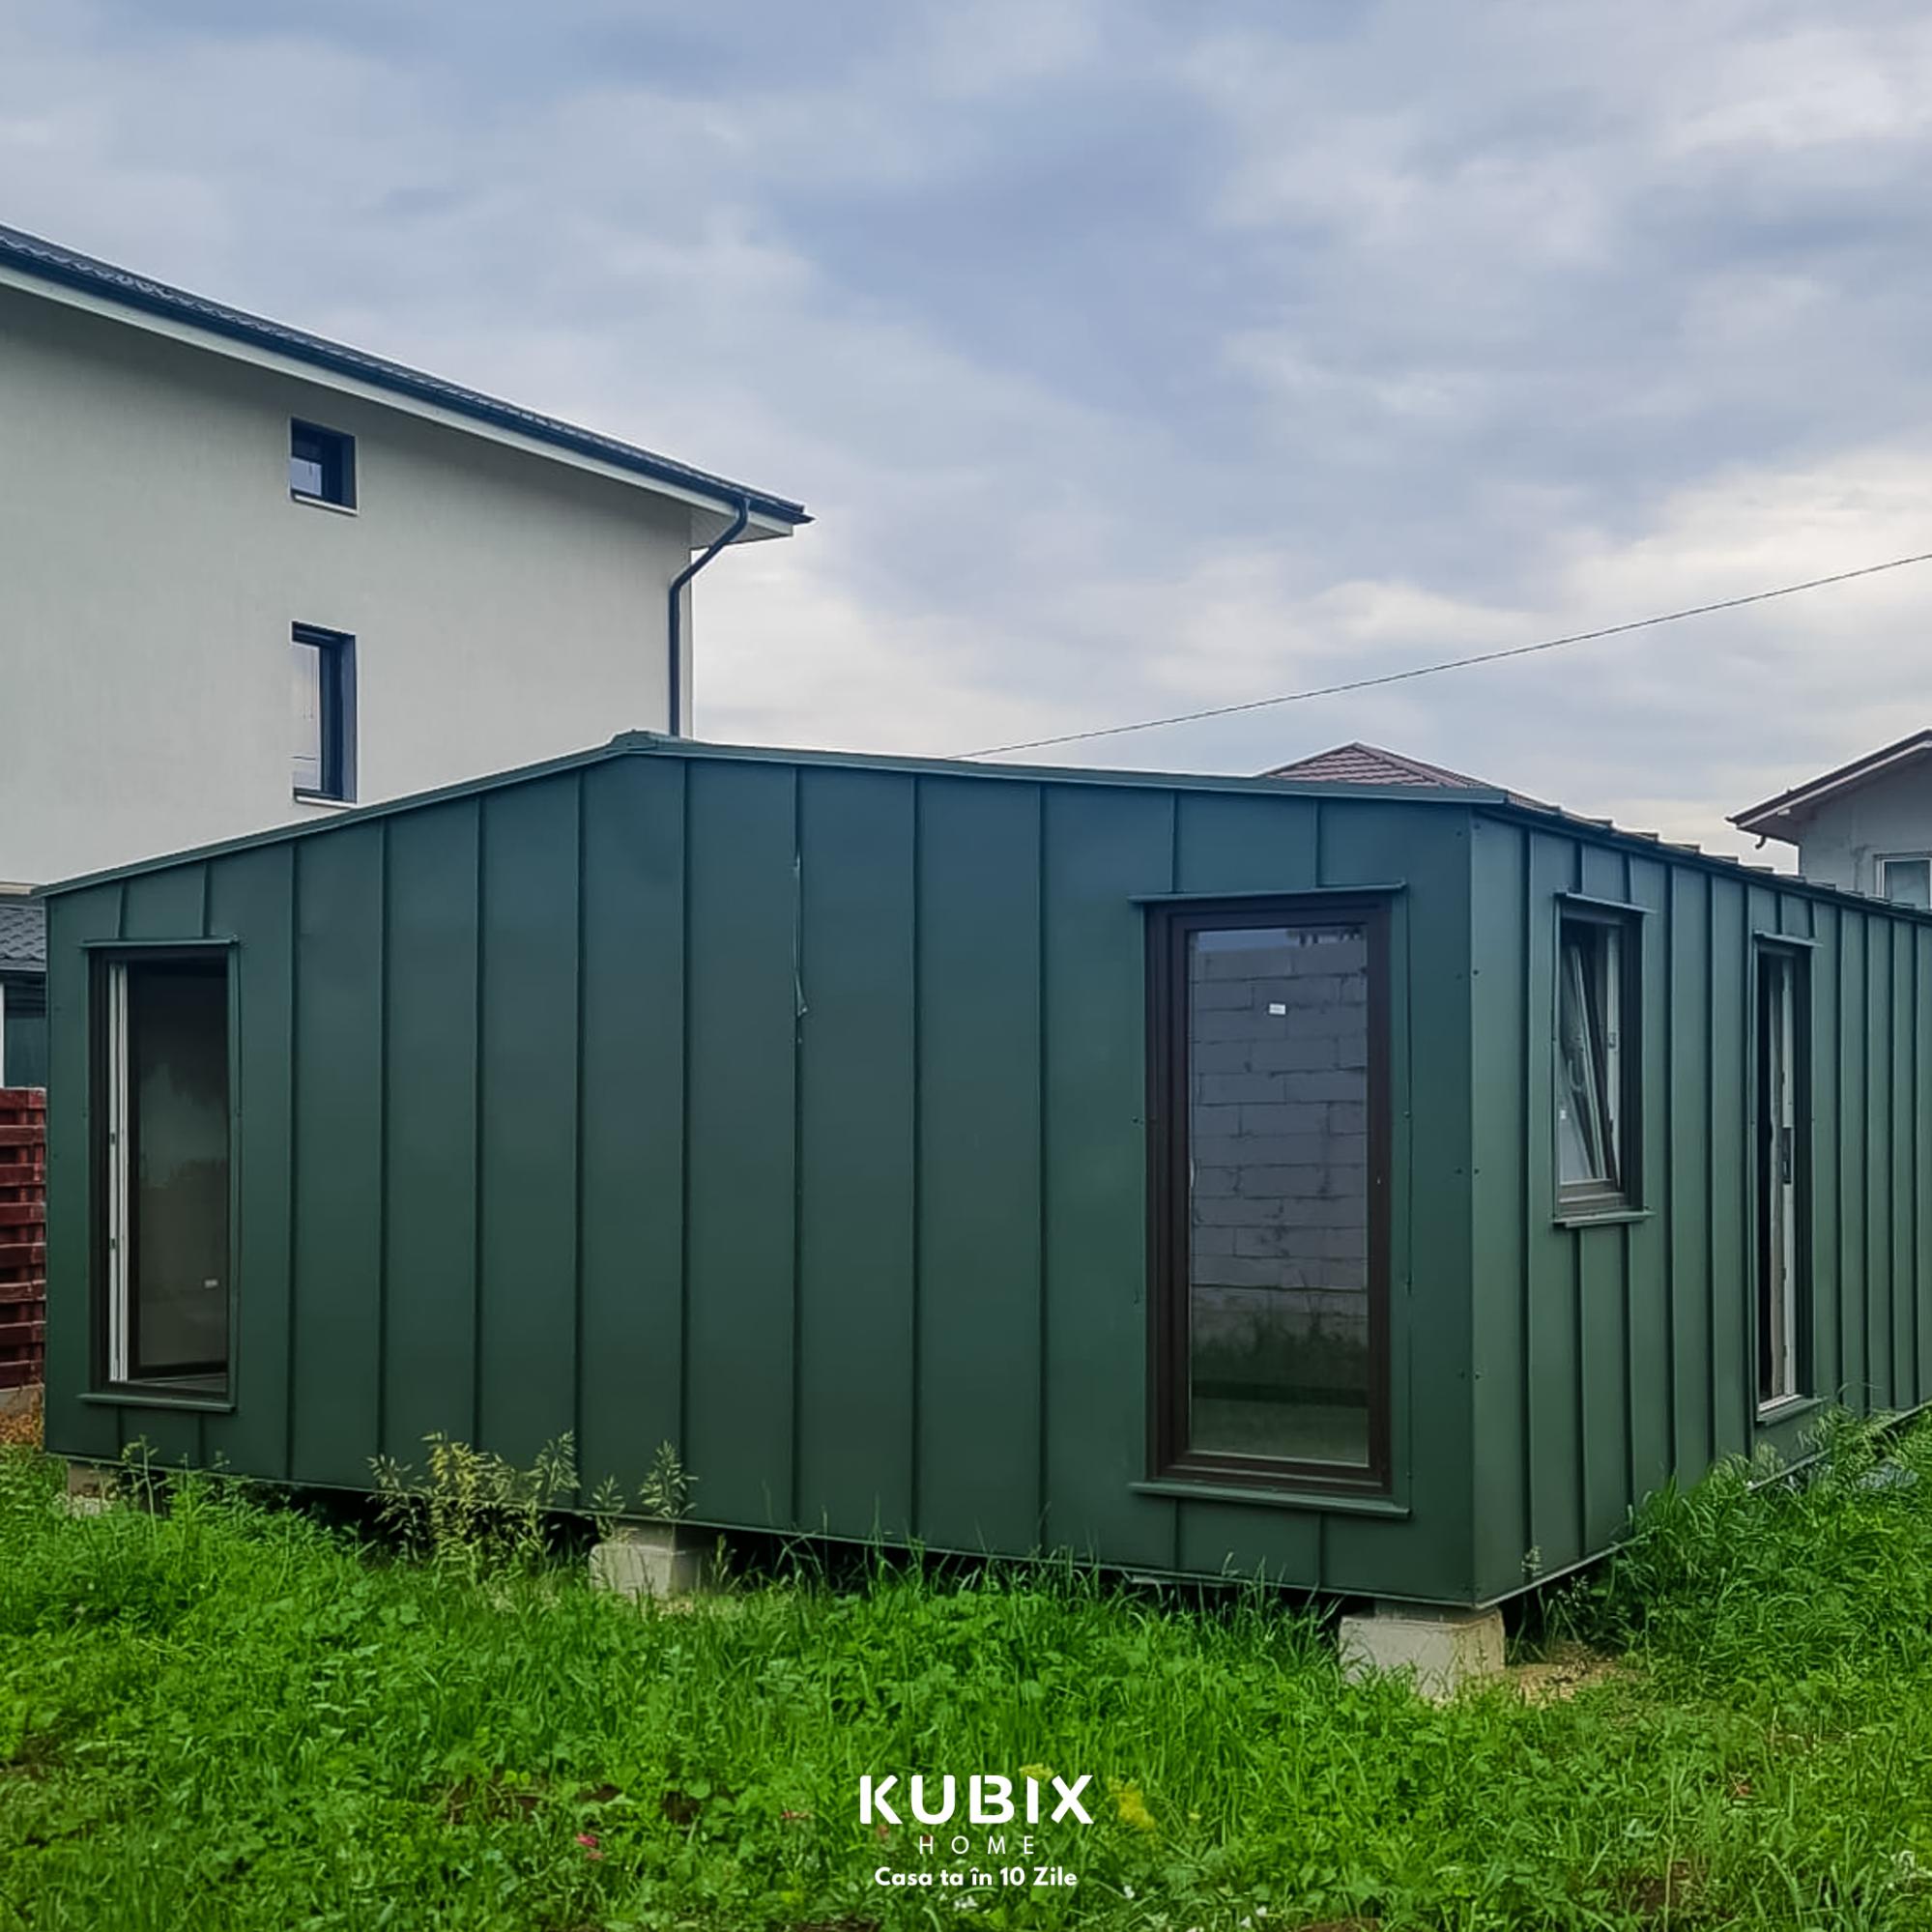 Kubix Home – O soluție modernă pentru case modulare personalizate